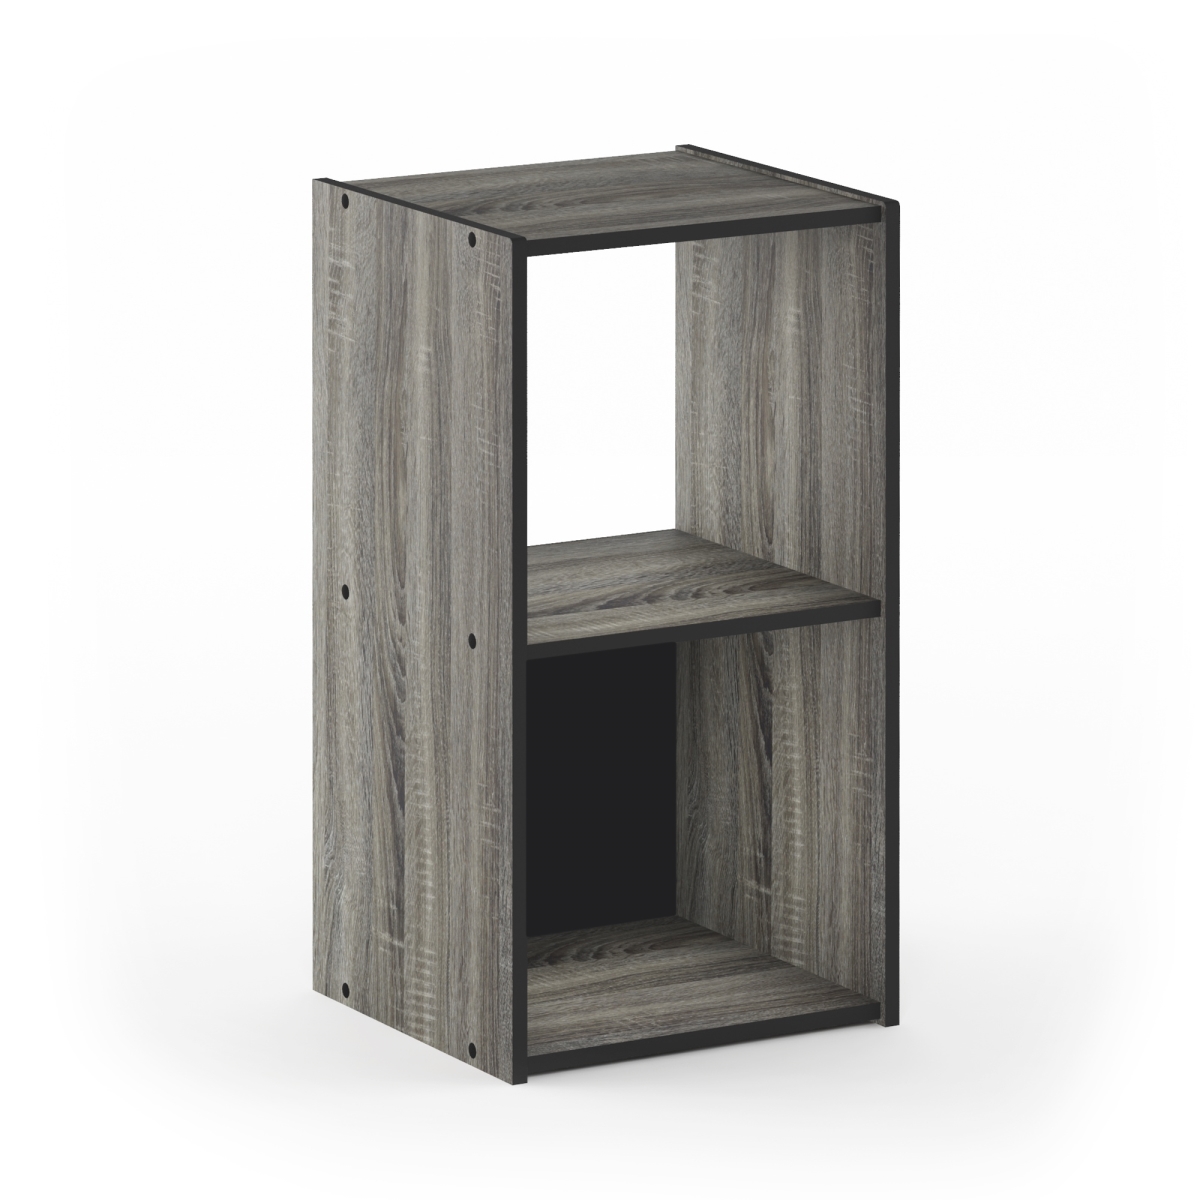 18049gyw 2 X 1 In. Pelli Cubic Storage Cabinet, French Oak Grey & Black